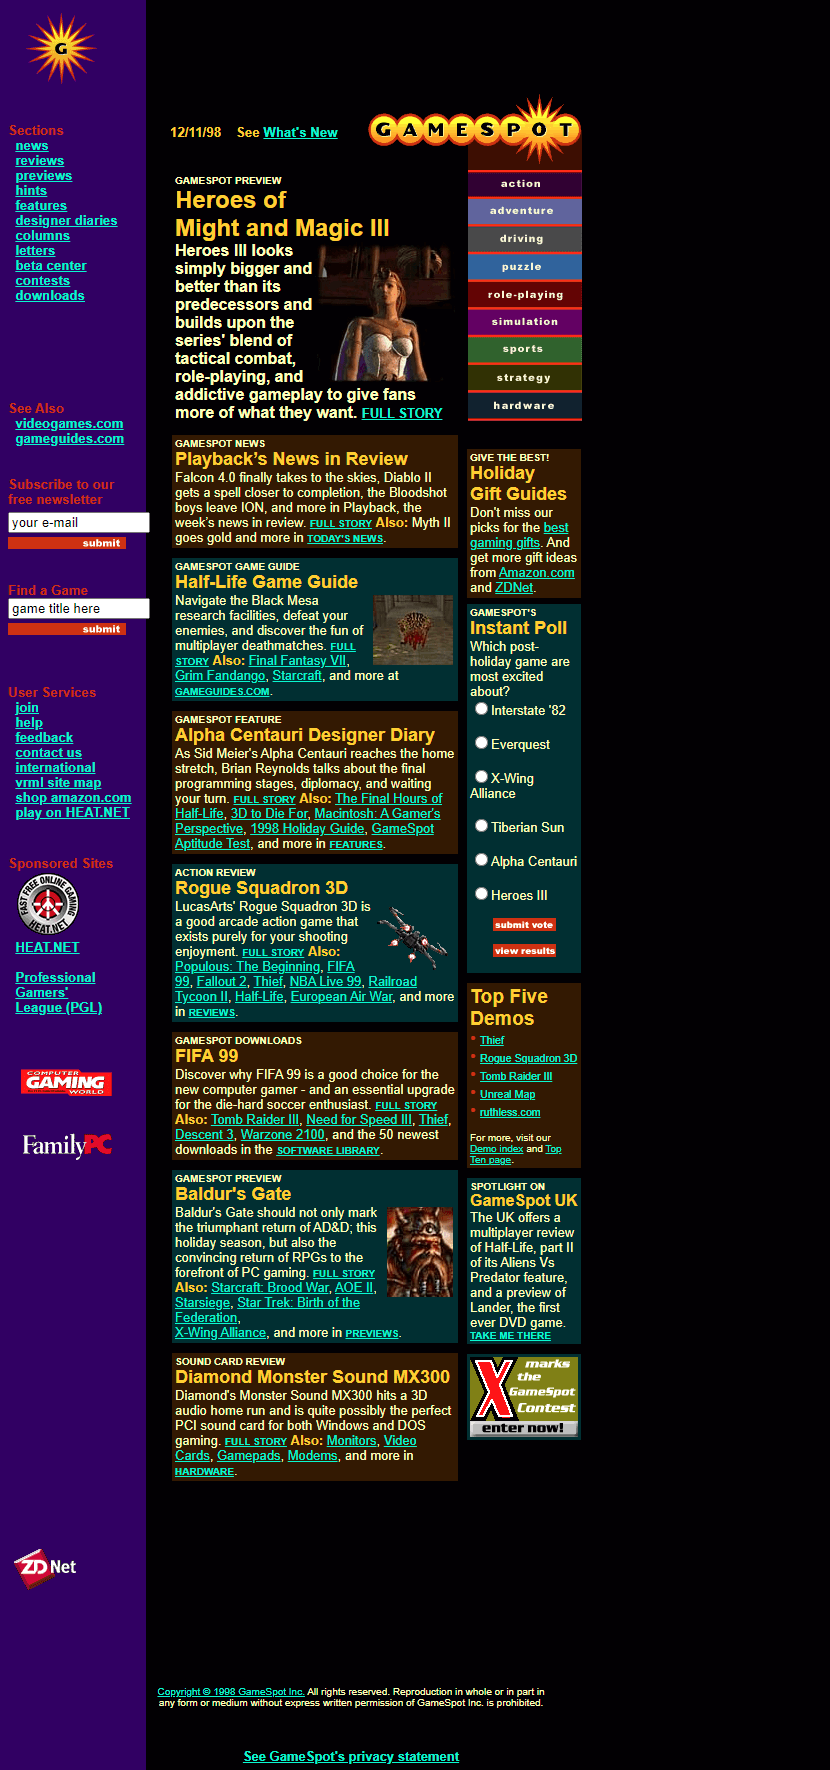 GameSpot website in 1998